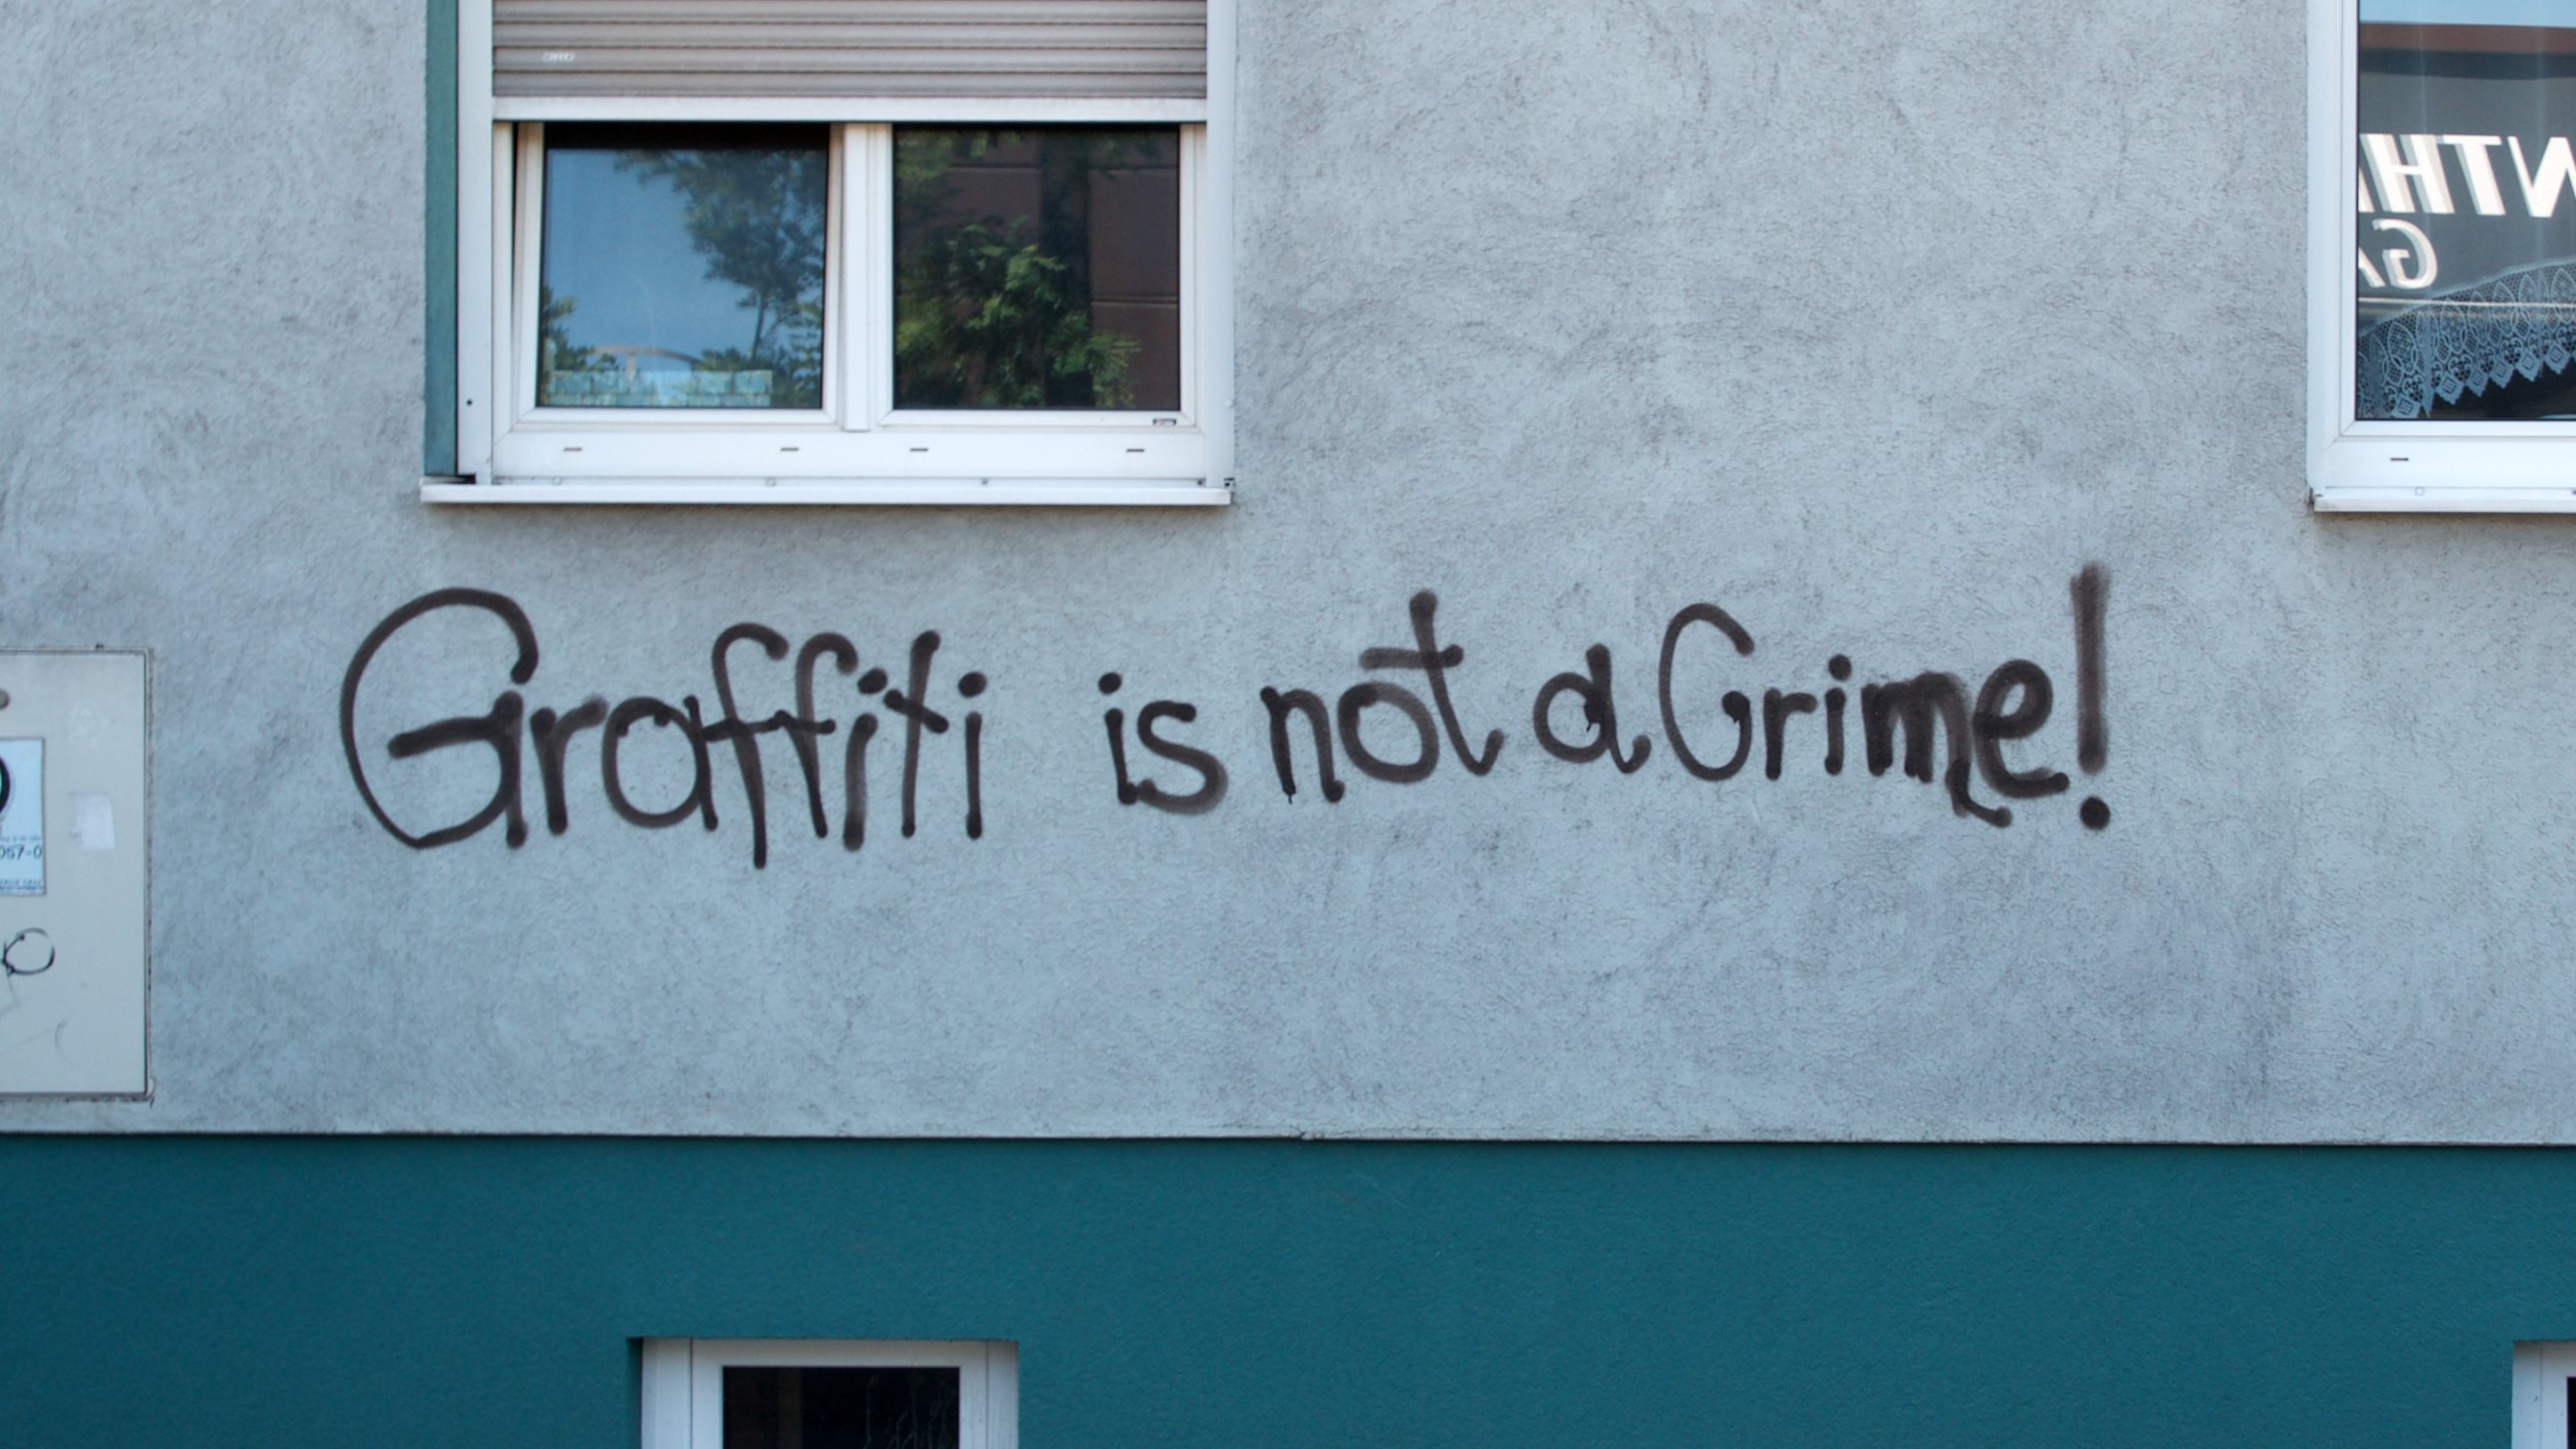 Graffiti mit Text "Graffiti is not a Crime